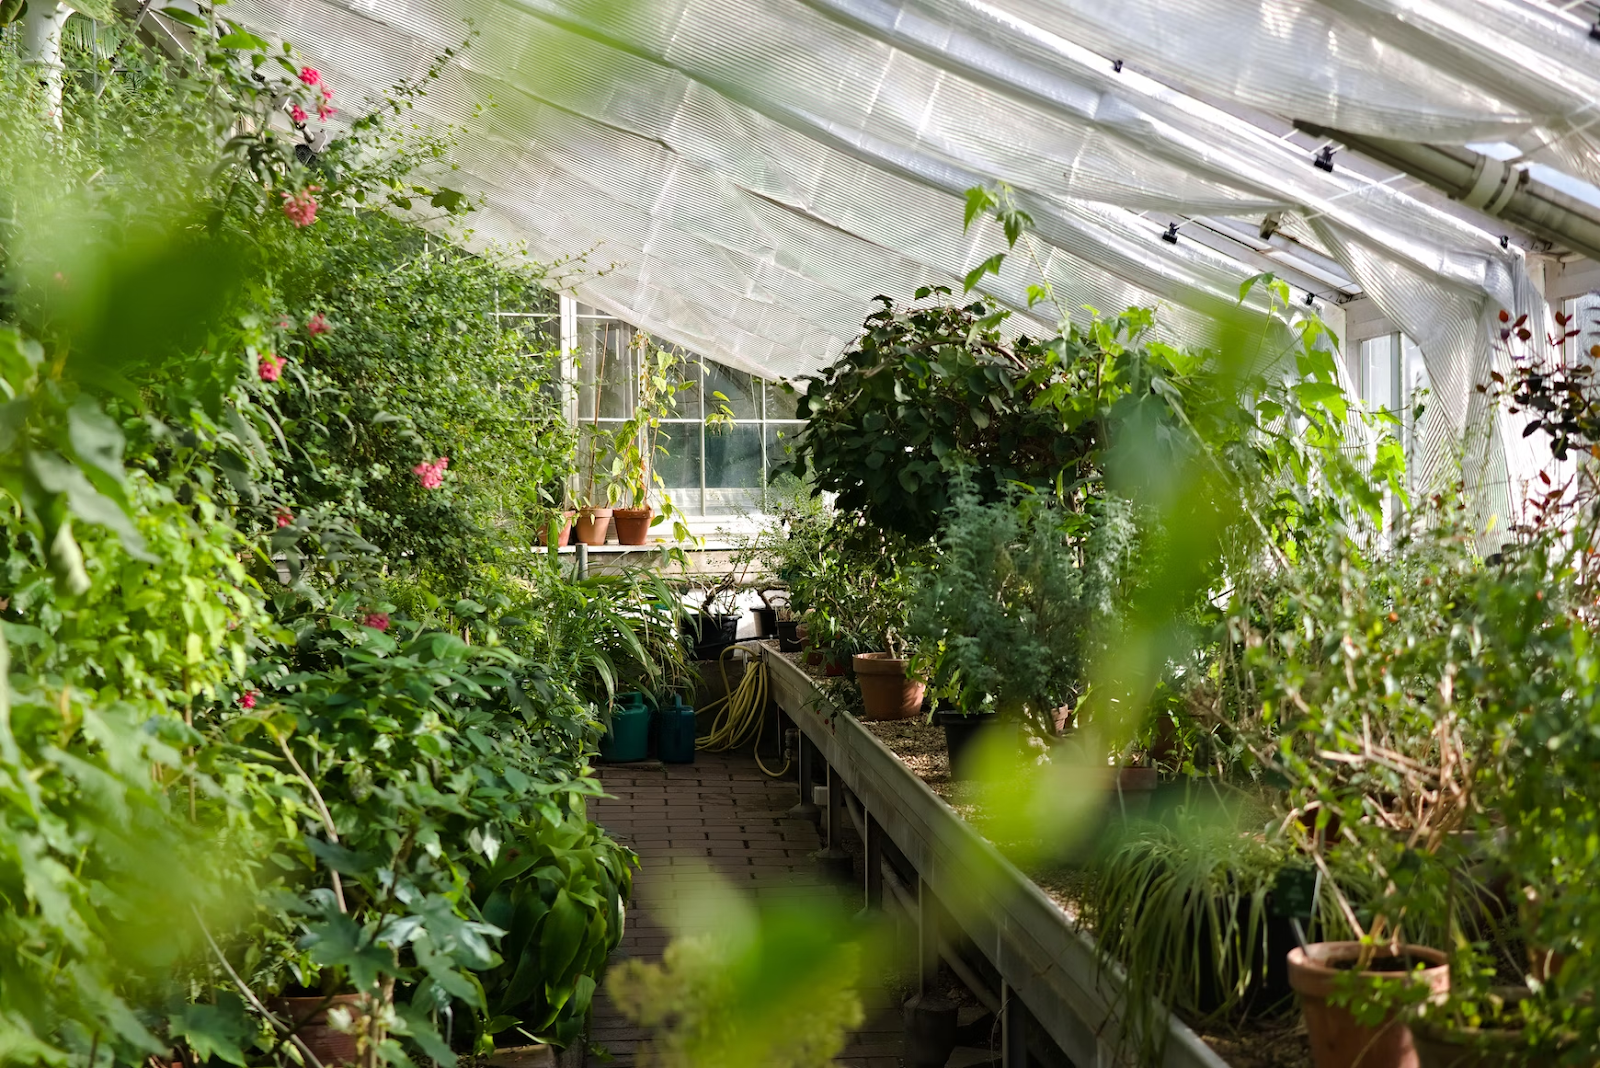 plants inside a glass house